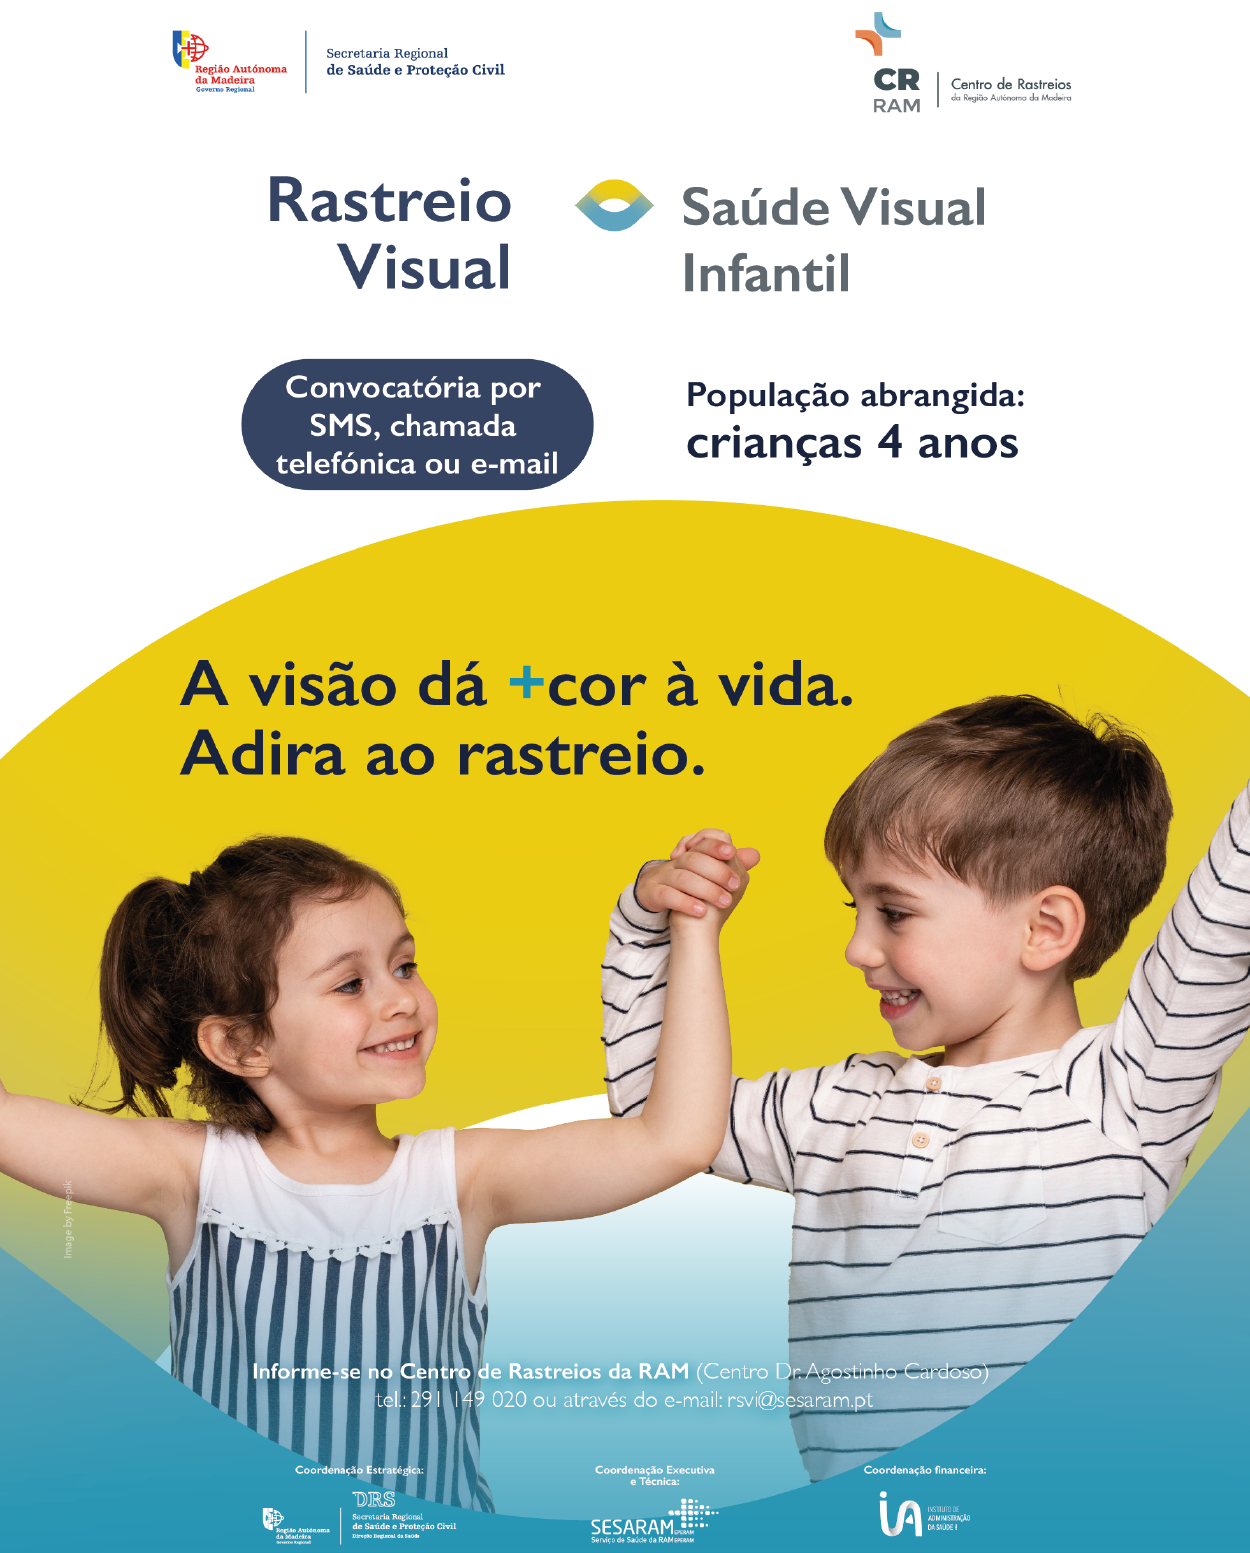 Rastreio Sa&#250;de Visual Infantil